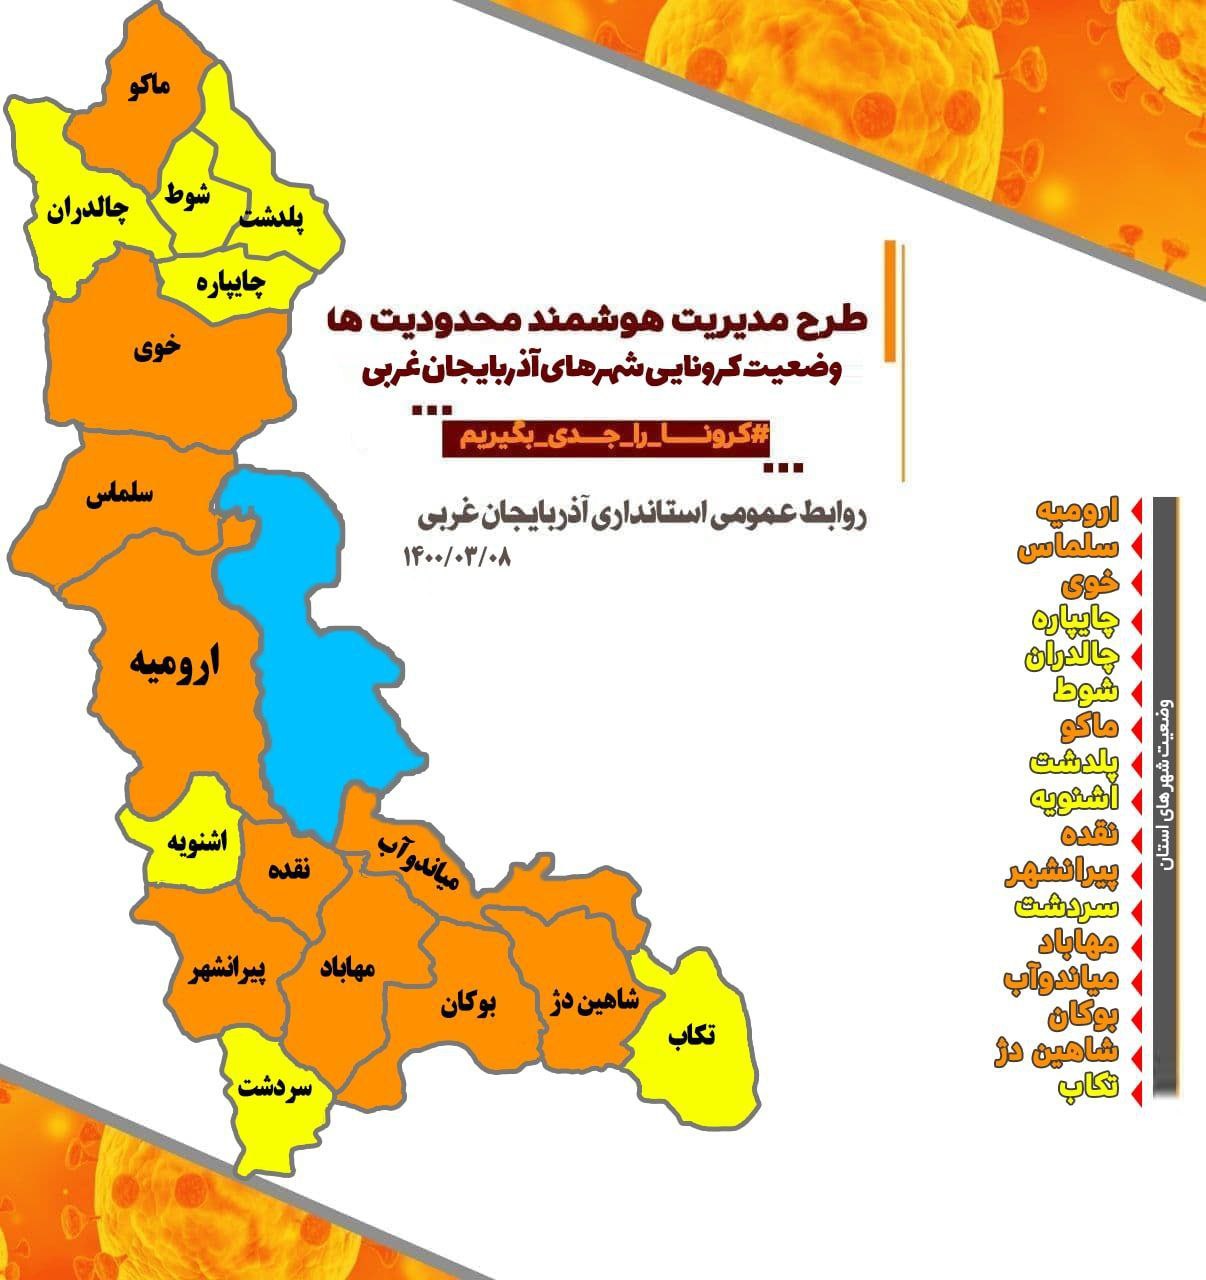 افزایش وضعیت شهرهای زرد آذربایجانغربی به هفت شهر